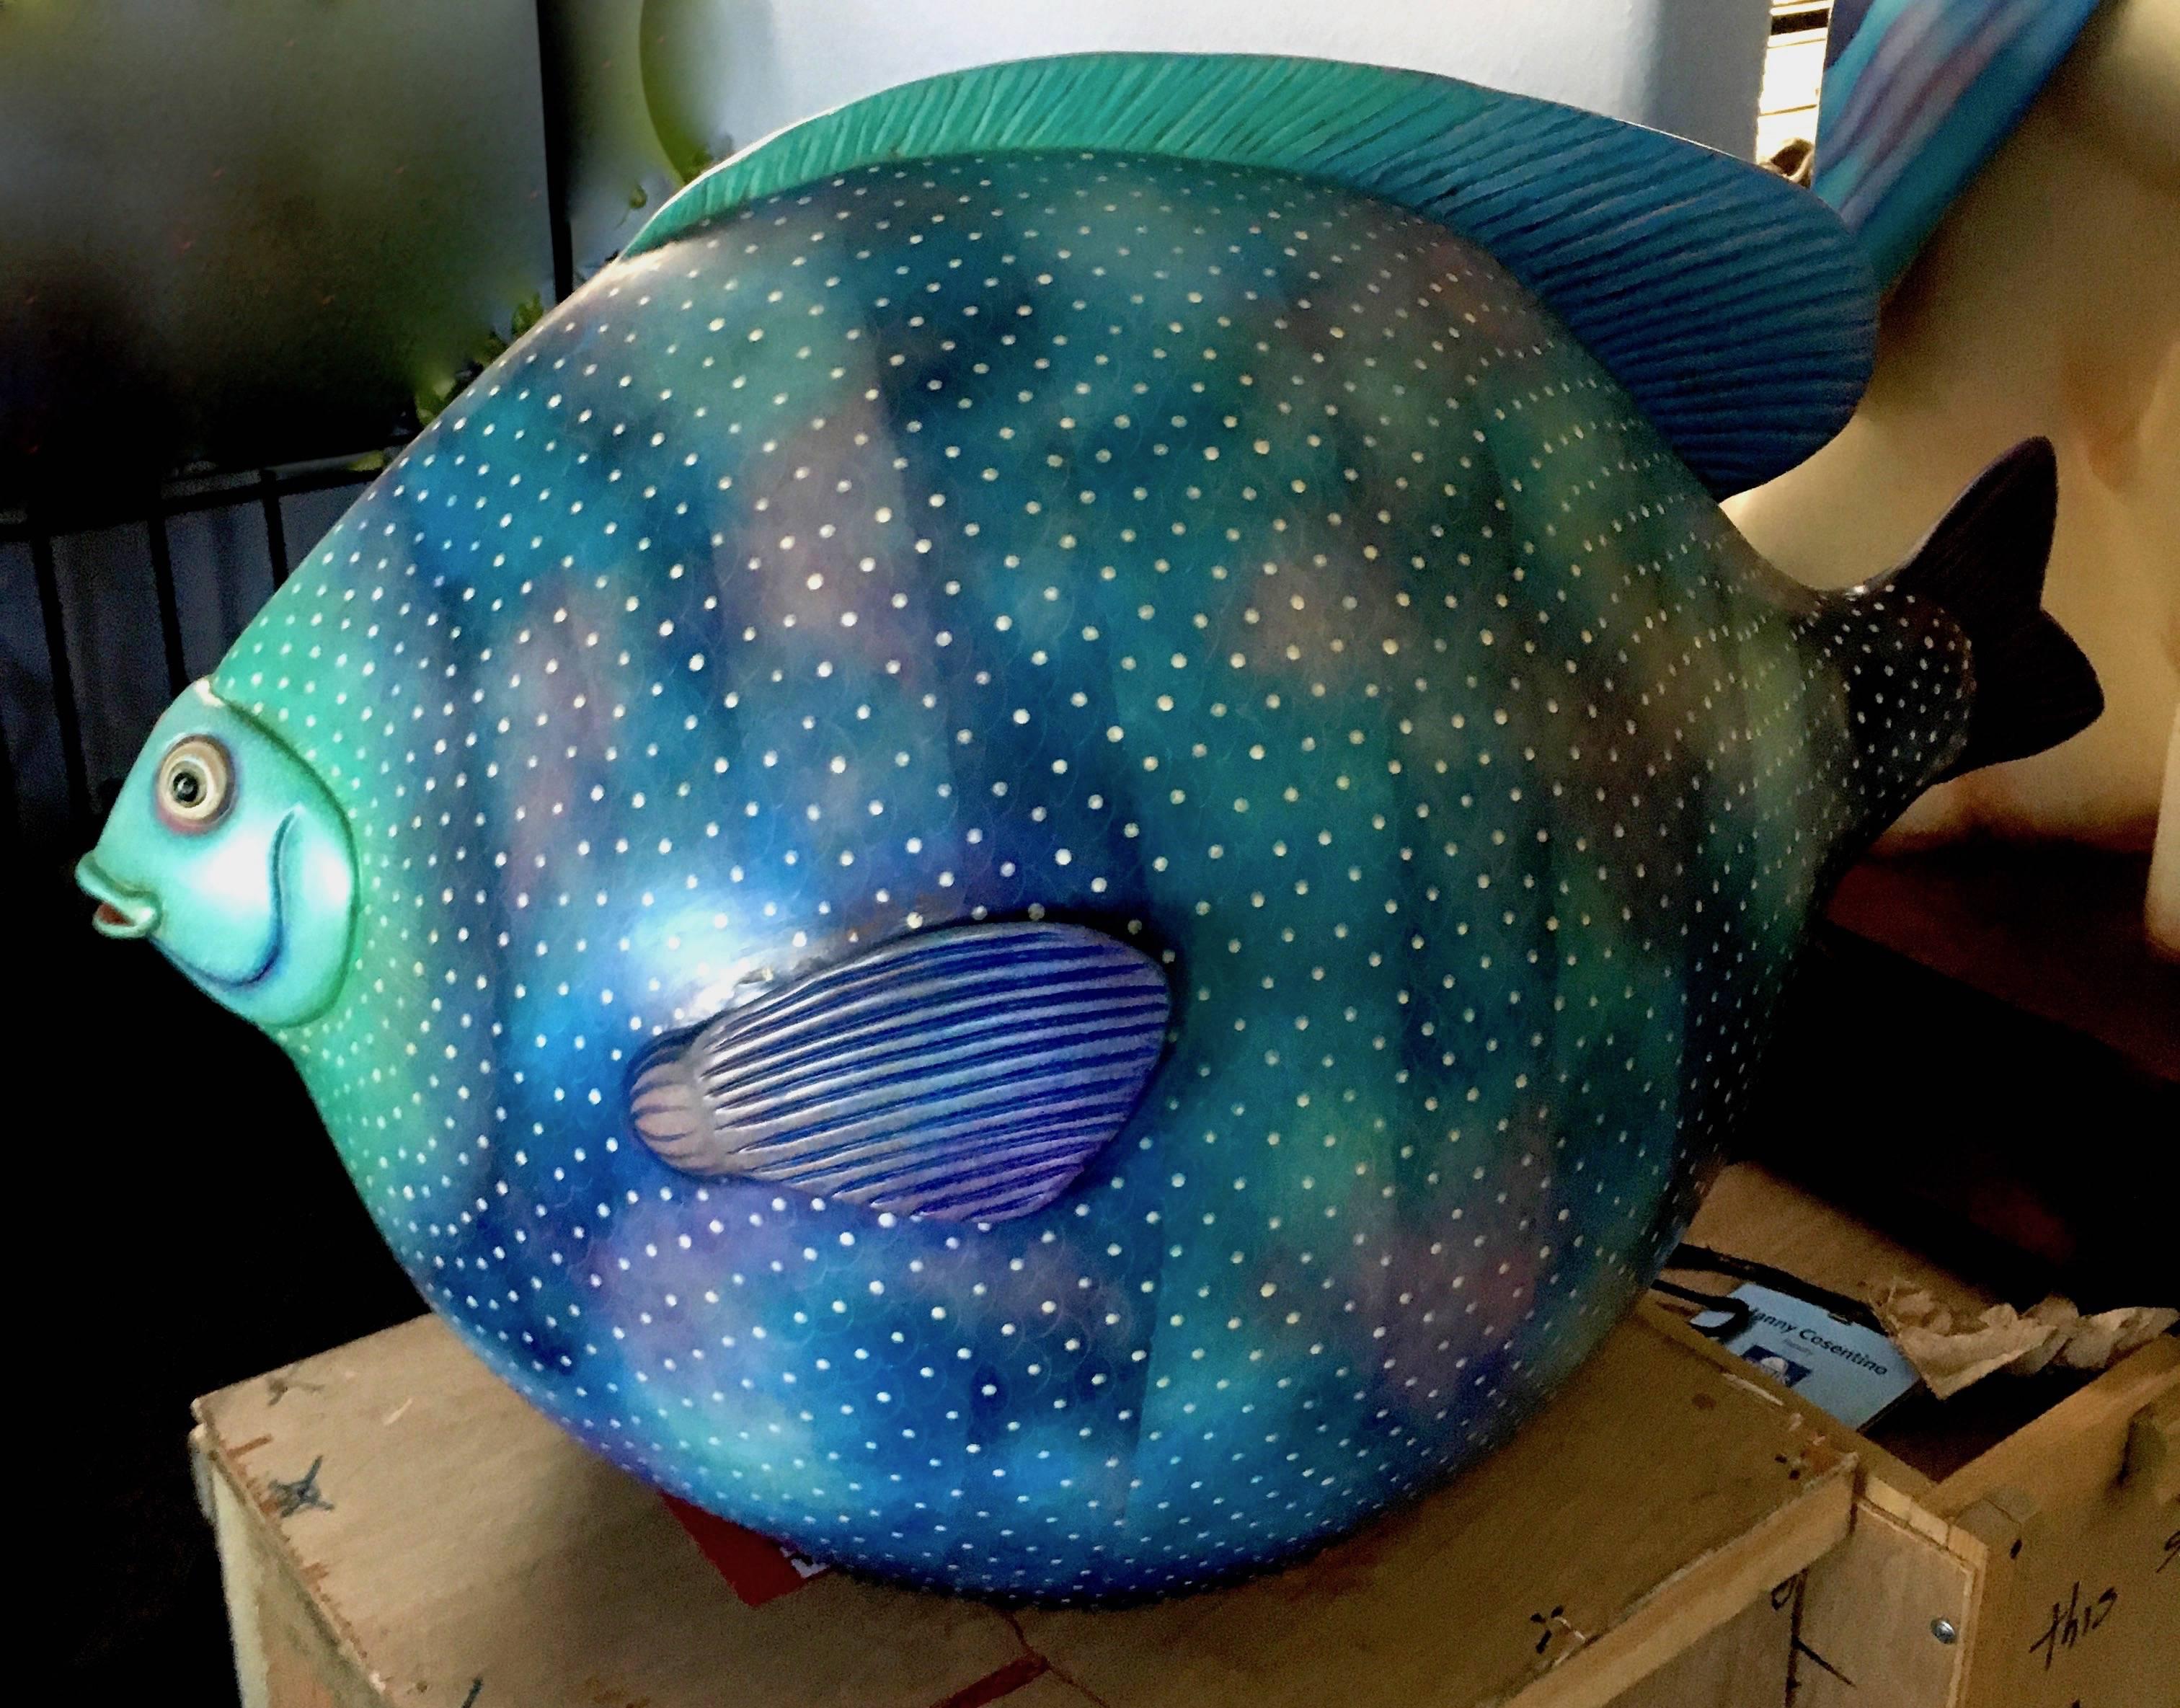 Ein schönes Paar signierter Keramikfische des mexikanischen Künstlers Sergio Bustamante. 

Der bezaubernde blau-grüne Körper dieses Fisches ist lichtdurchflutet und geht in eine ausdrucksstarke Flosse und ein Gesicht über. Eine skurrile Ergänzung